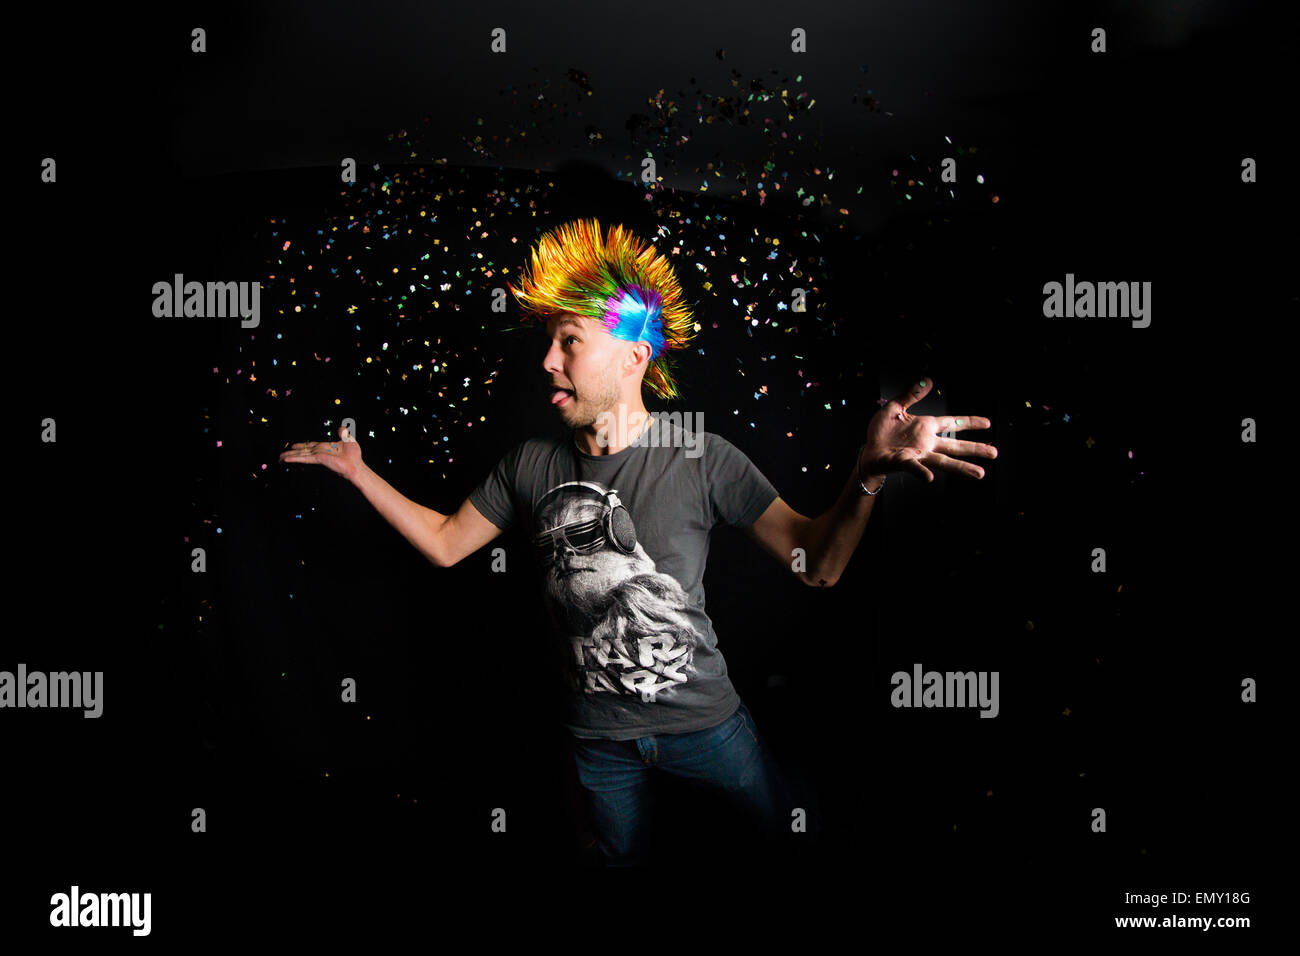 Ritratto di un uomo con capelli colorati gettando coriandoli nell'aria. Foto Stock